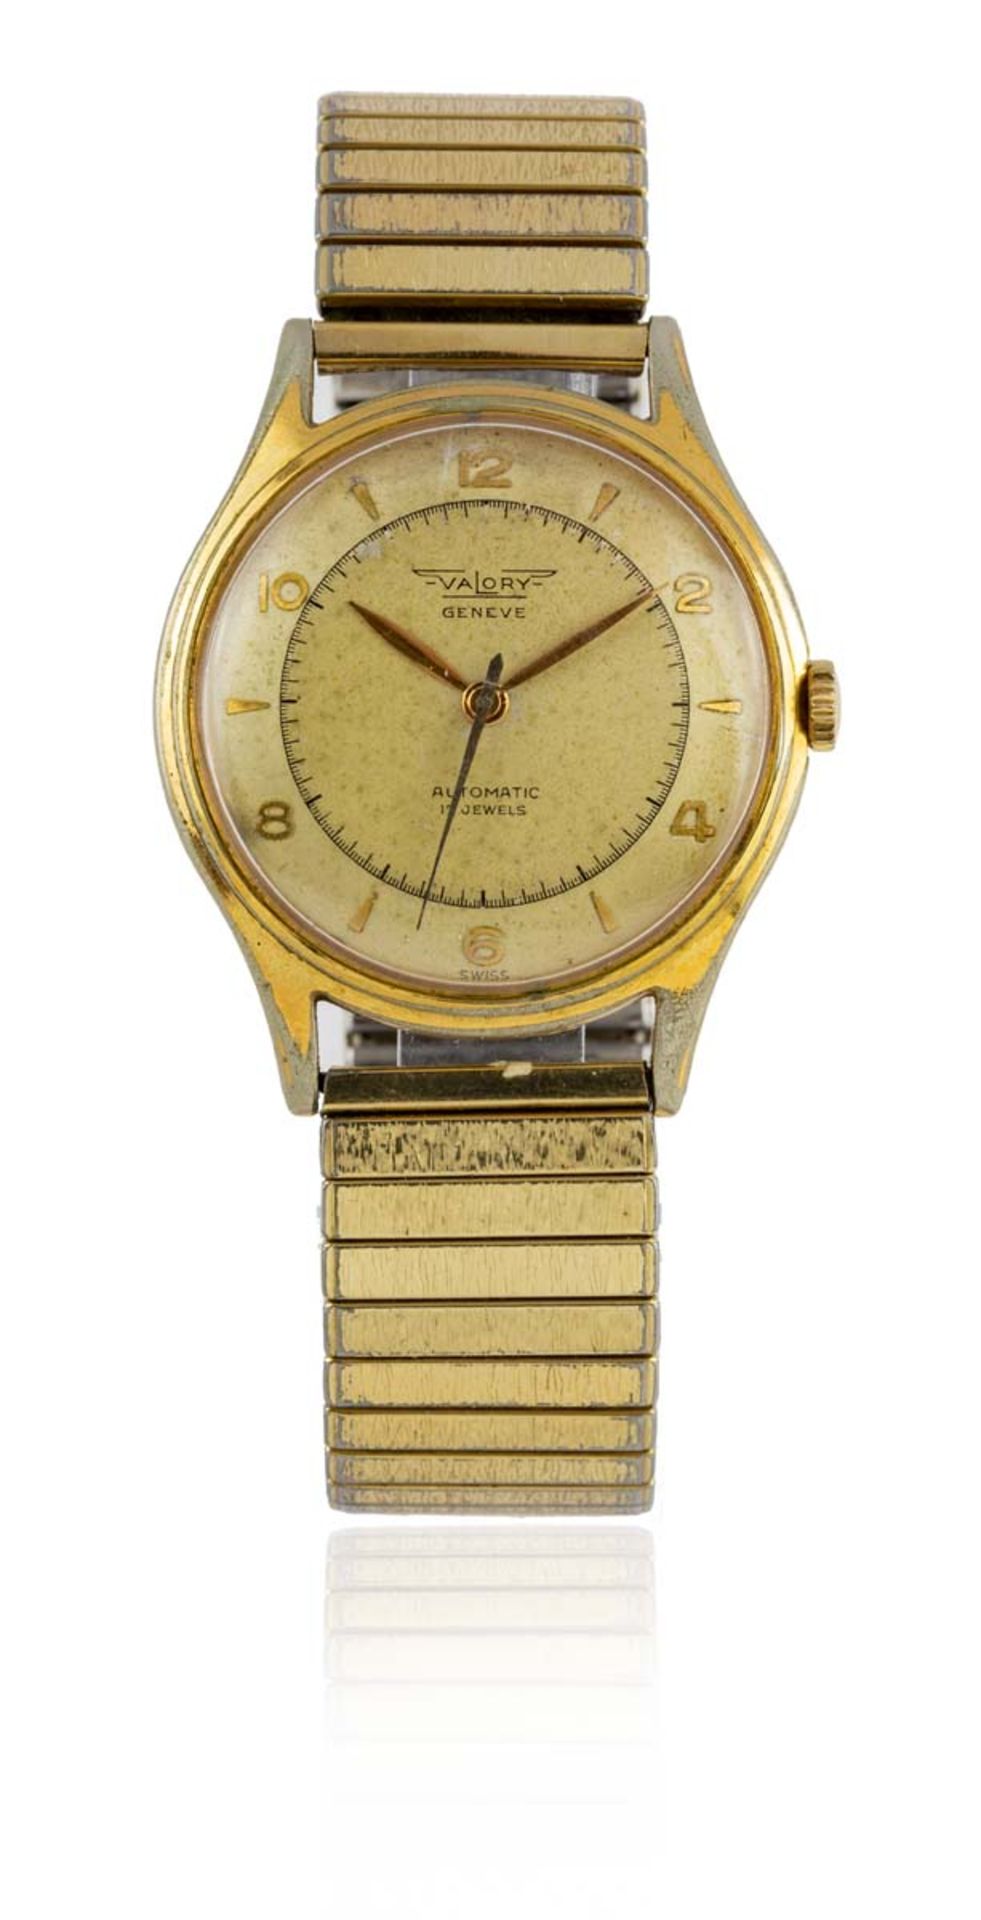 VALORY, GENEVEMontre bracelet militaire en métal doré vers 1940, cadran beige patiné, indicateur à